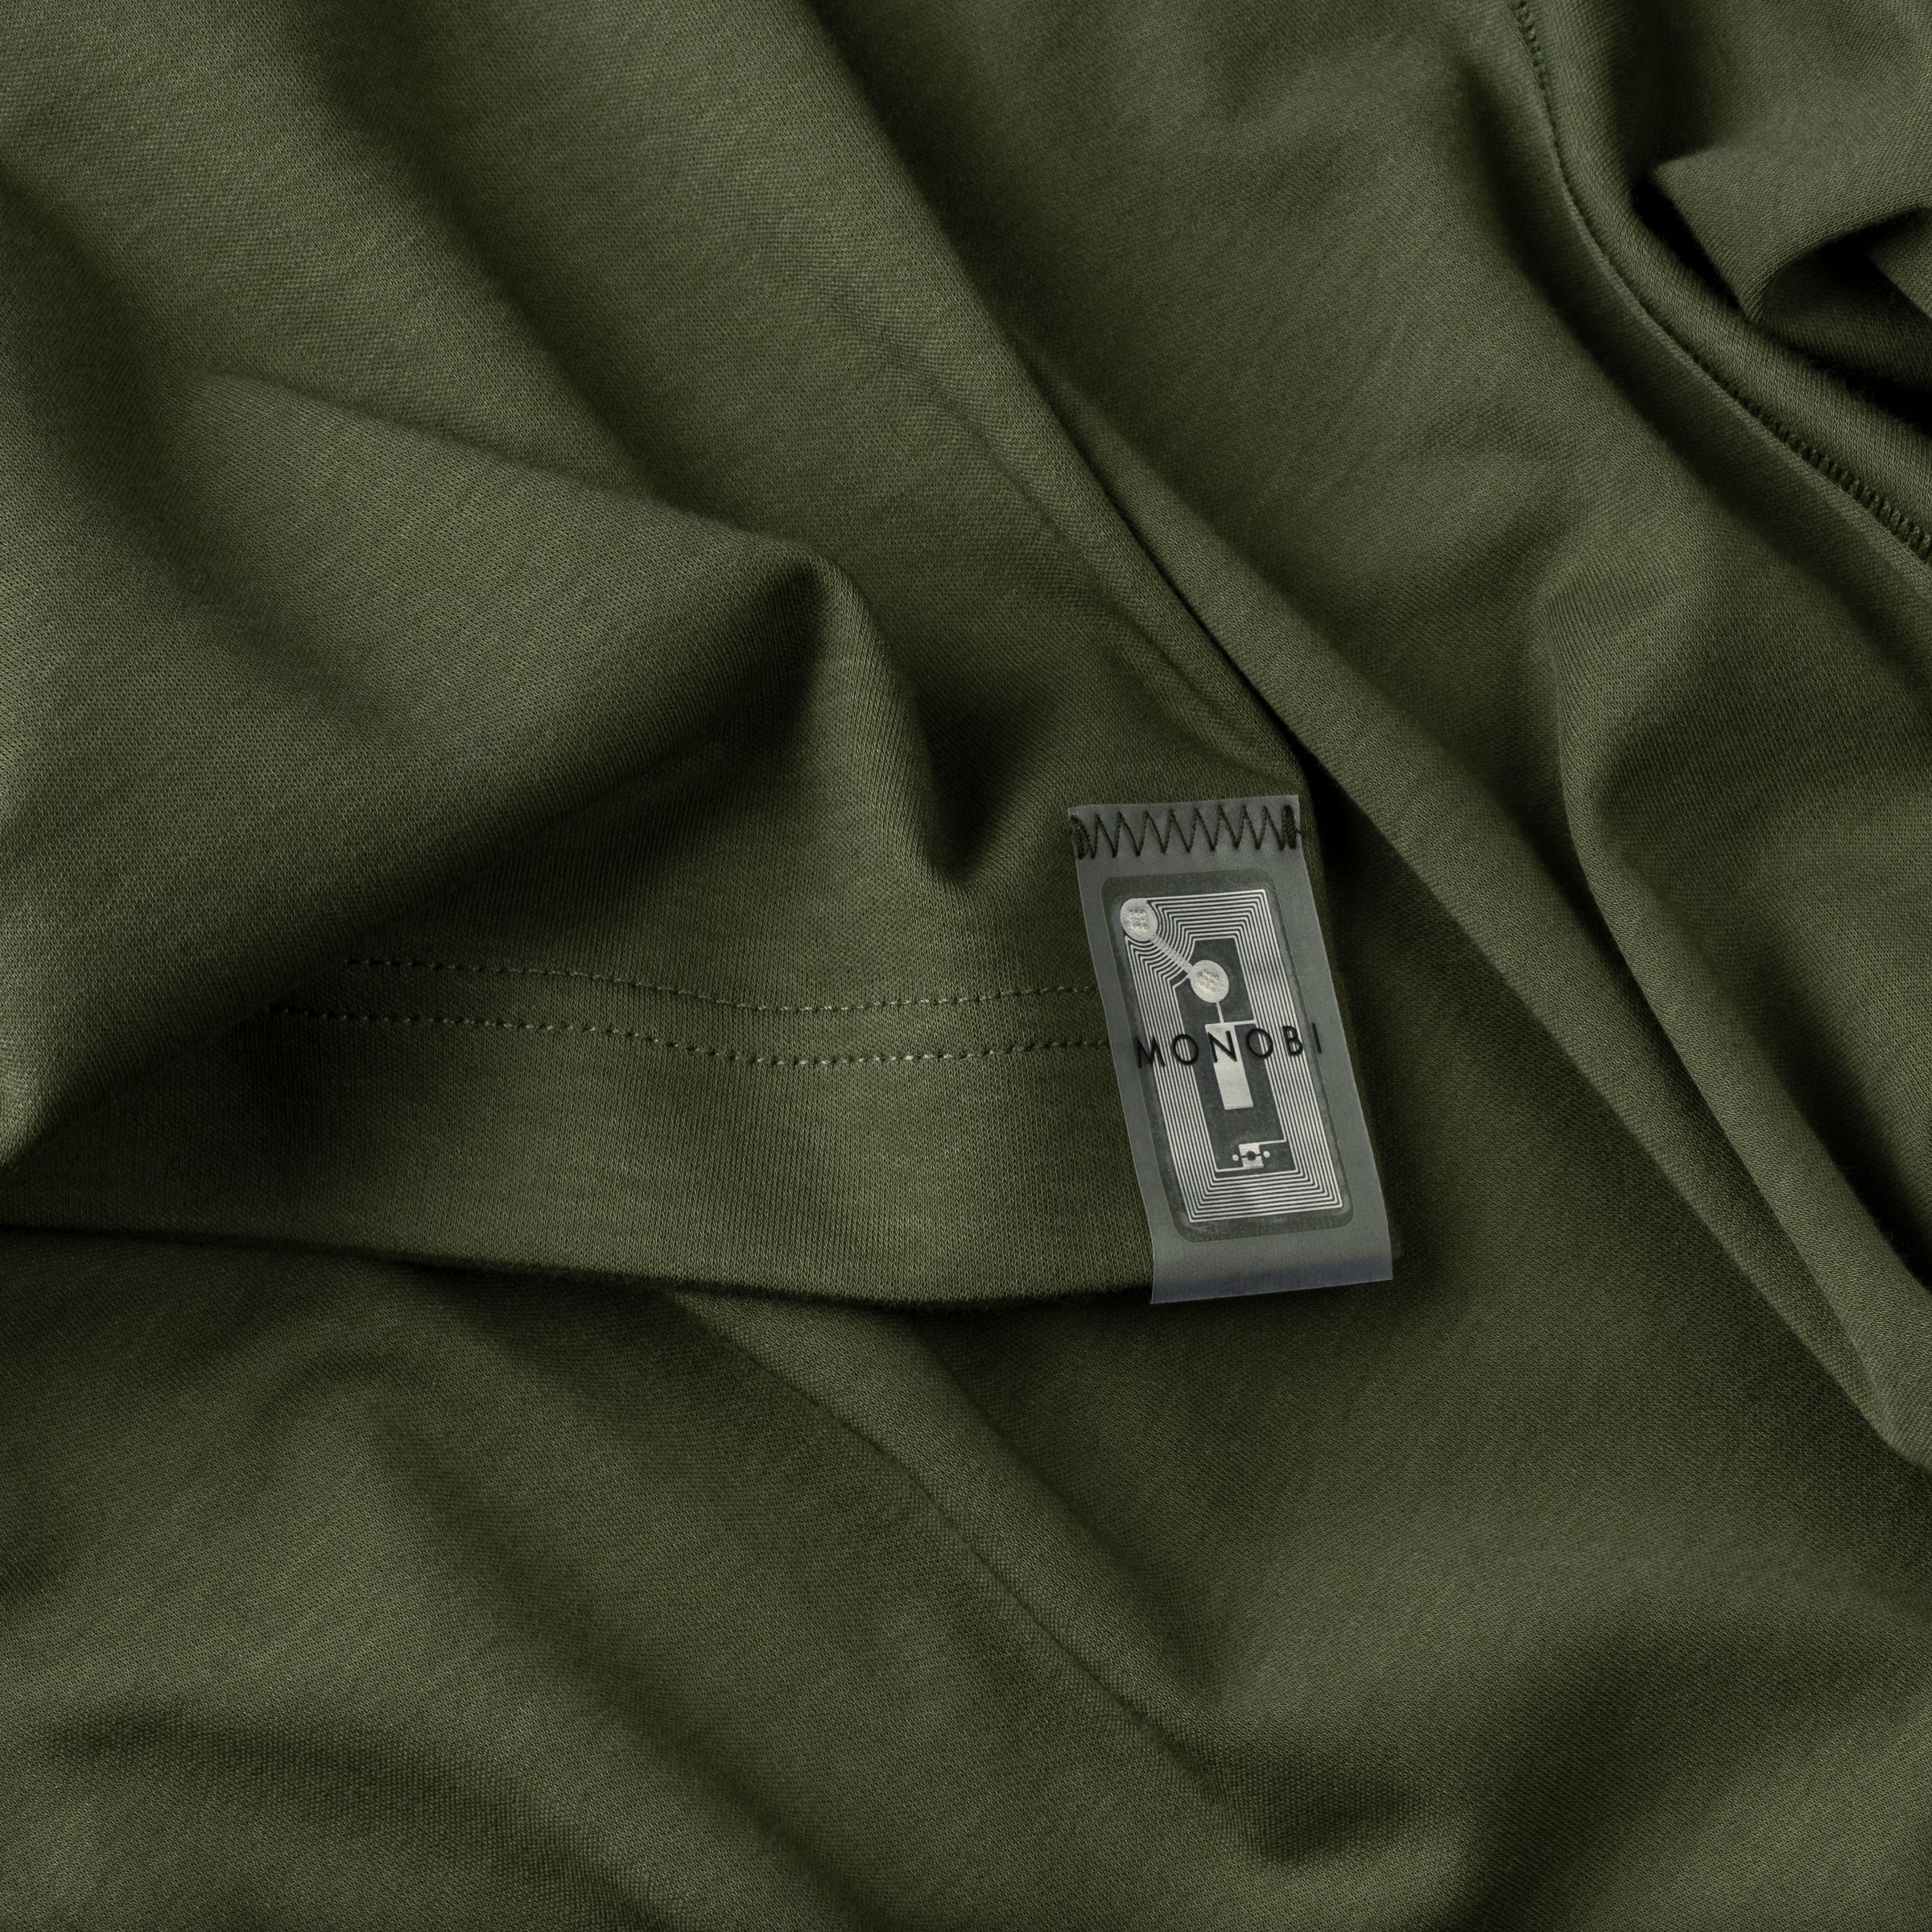 Dettaglio della targhetta cucita sul retro della Tshirt verde Icy Touch